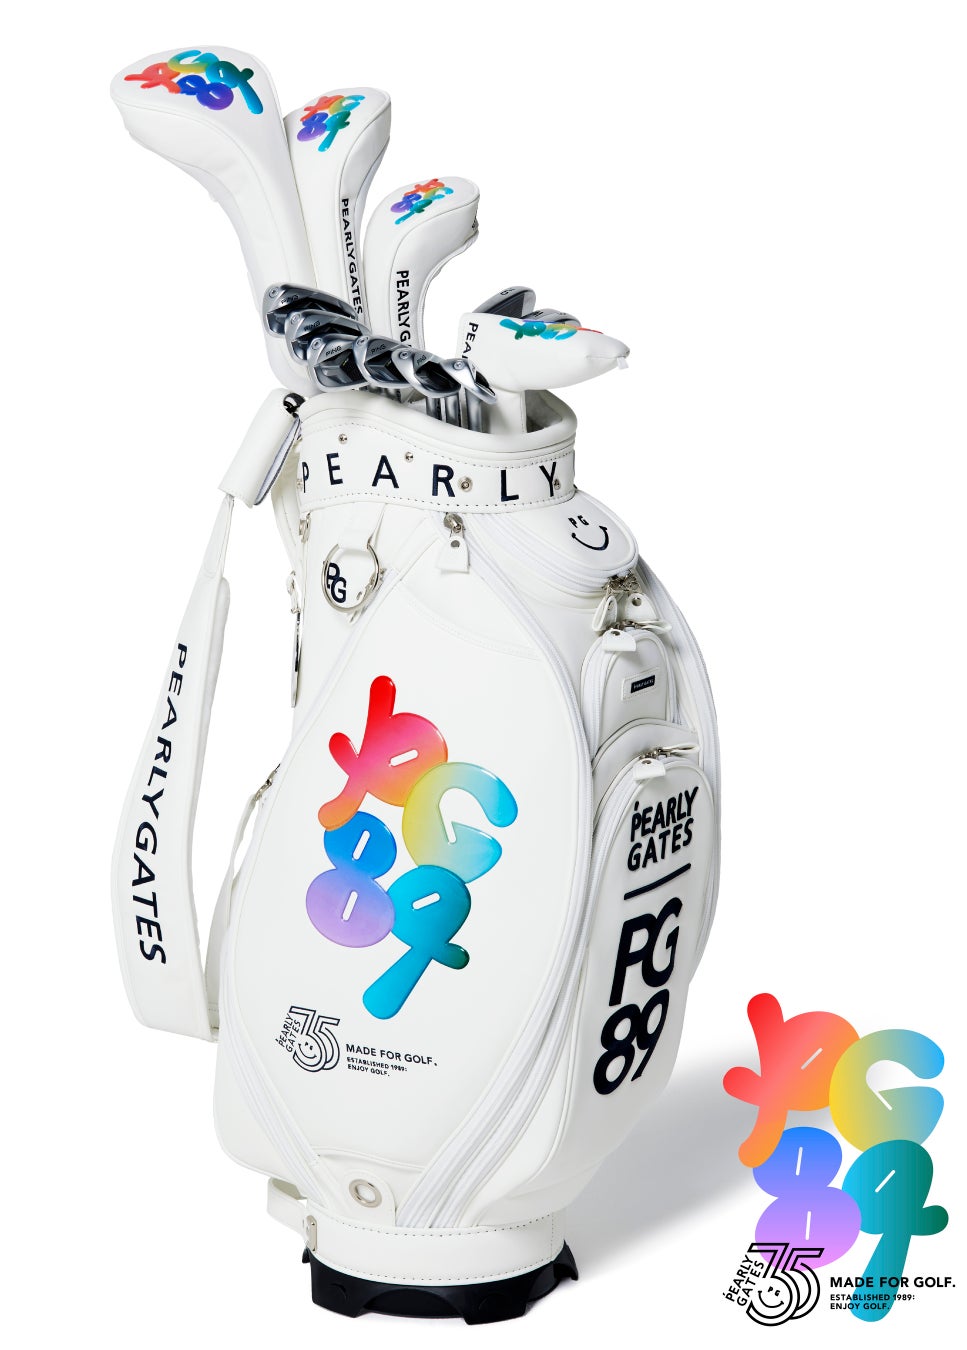 ゴルフアパレルブランド【パーリーゲイツ】ブランド設立35周年を記念したコレクションを発表！